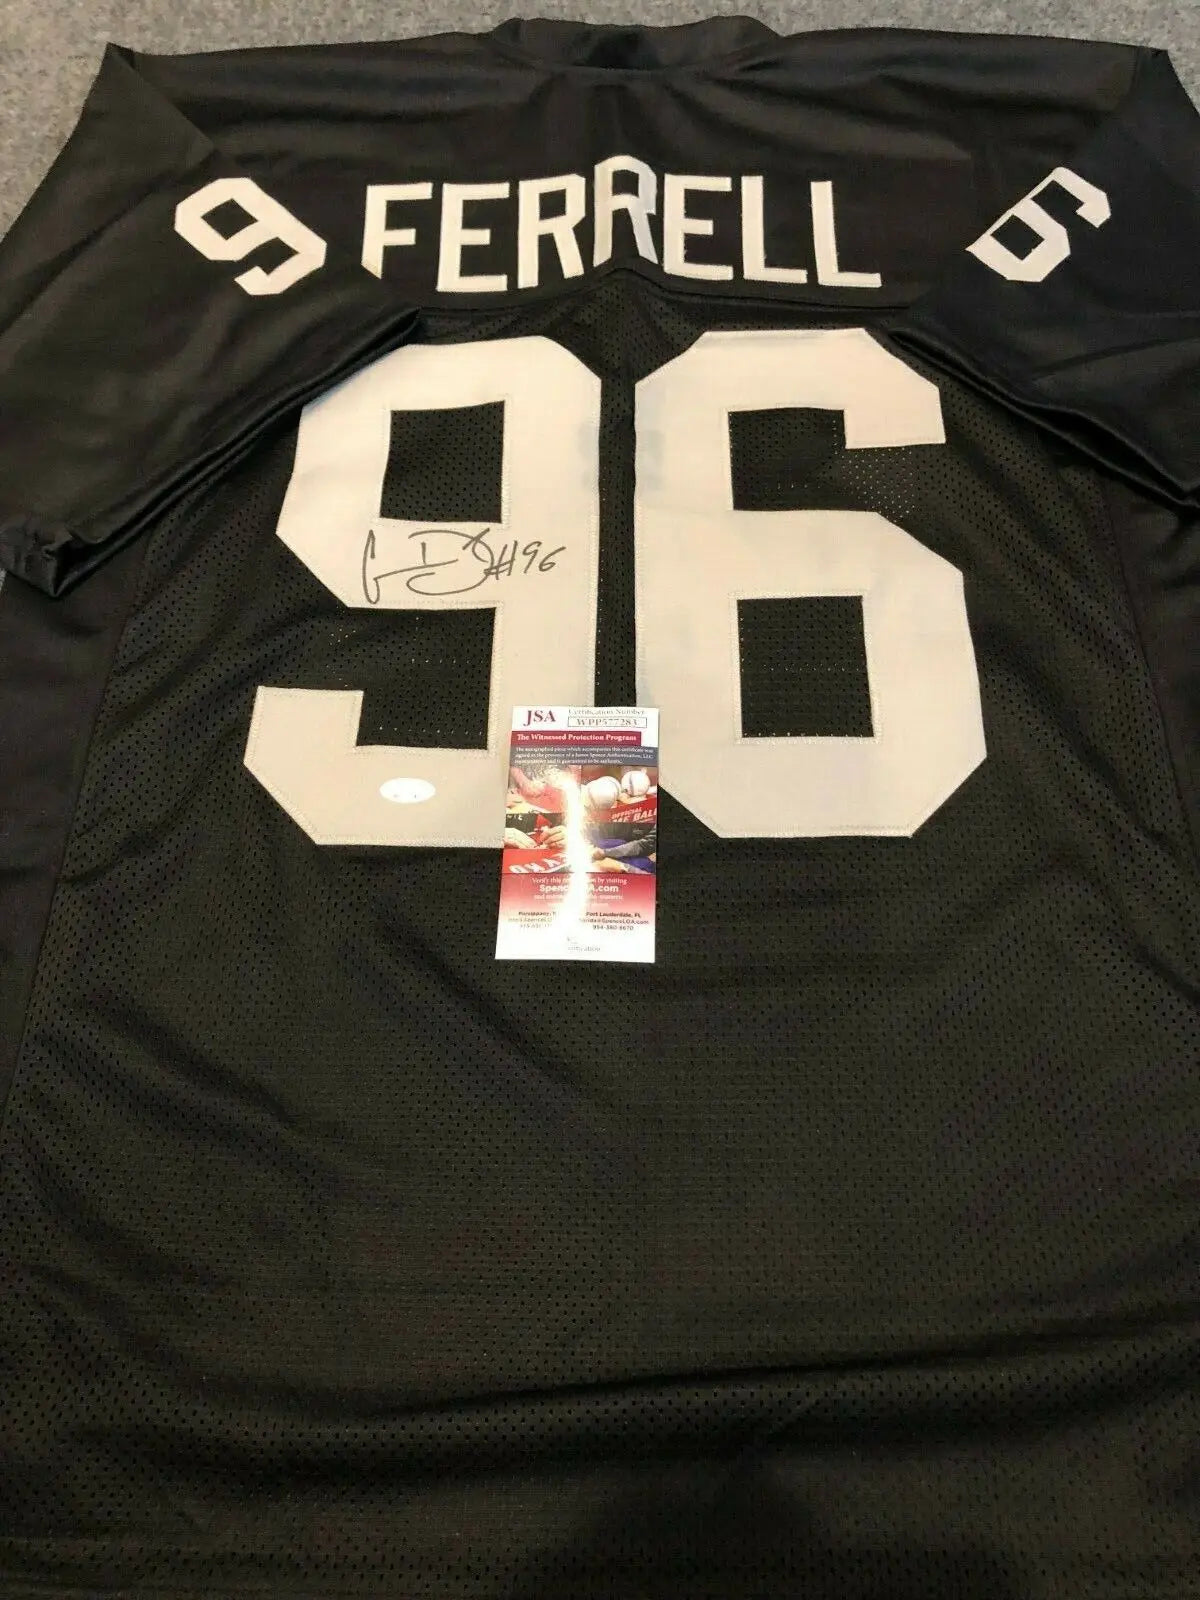 Ferrell Clelin jersey